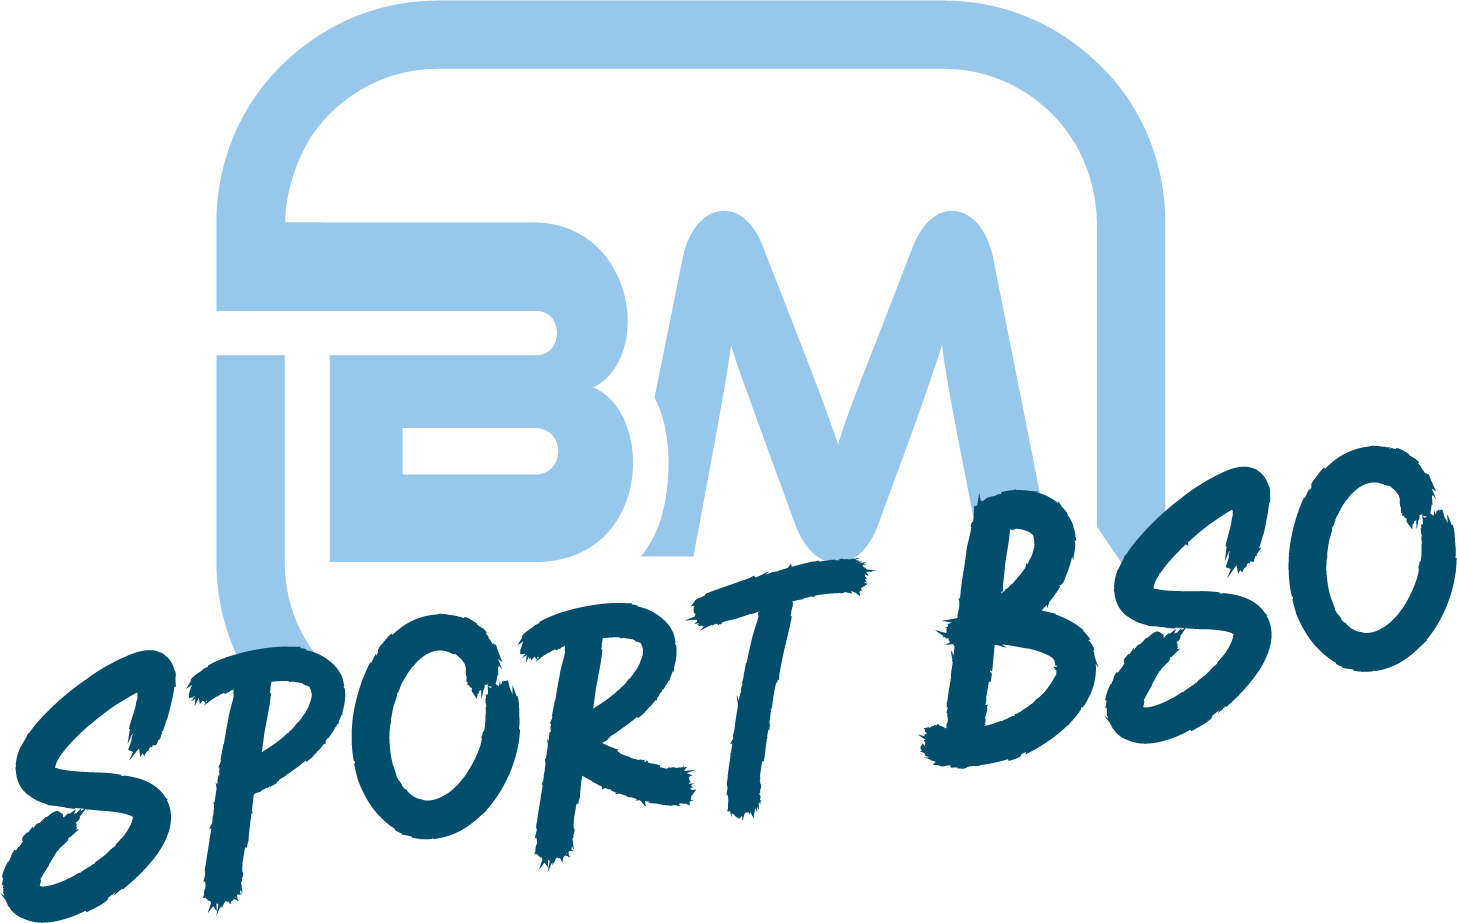 Beweegmasters sport BSO logo - buitenschoolse kinderopvang voor kinderen van het basisonderwijs - info@beweegmasters.nl - 06 188 249 88